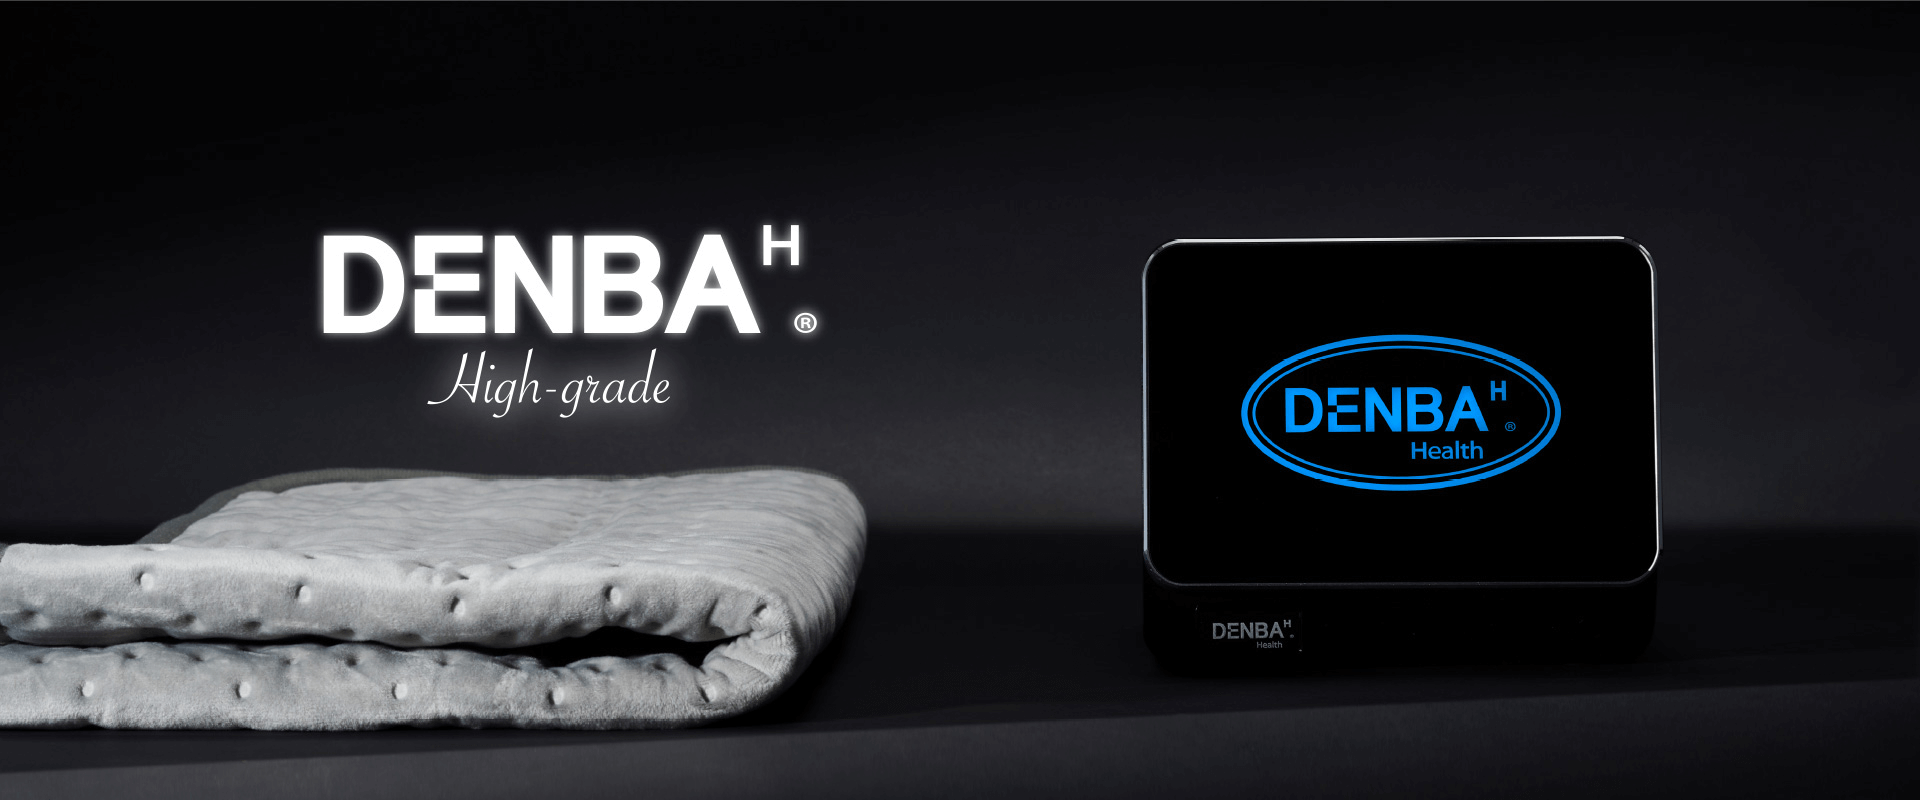 DENBA Co.,Ltd